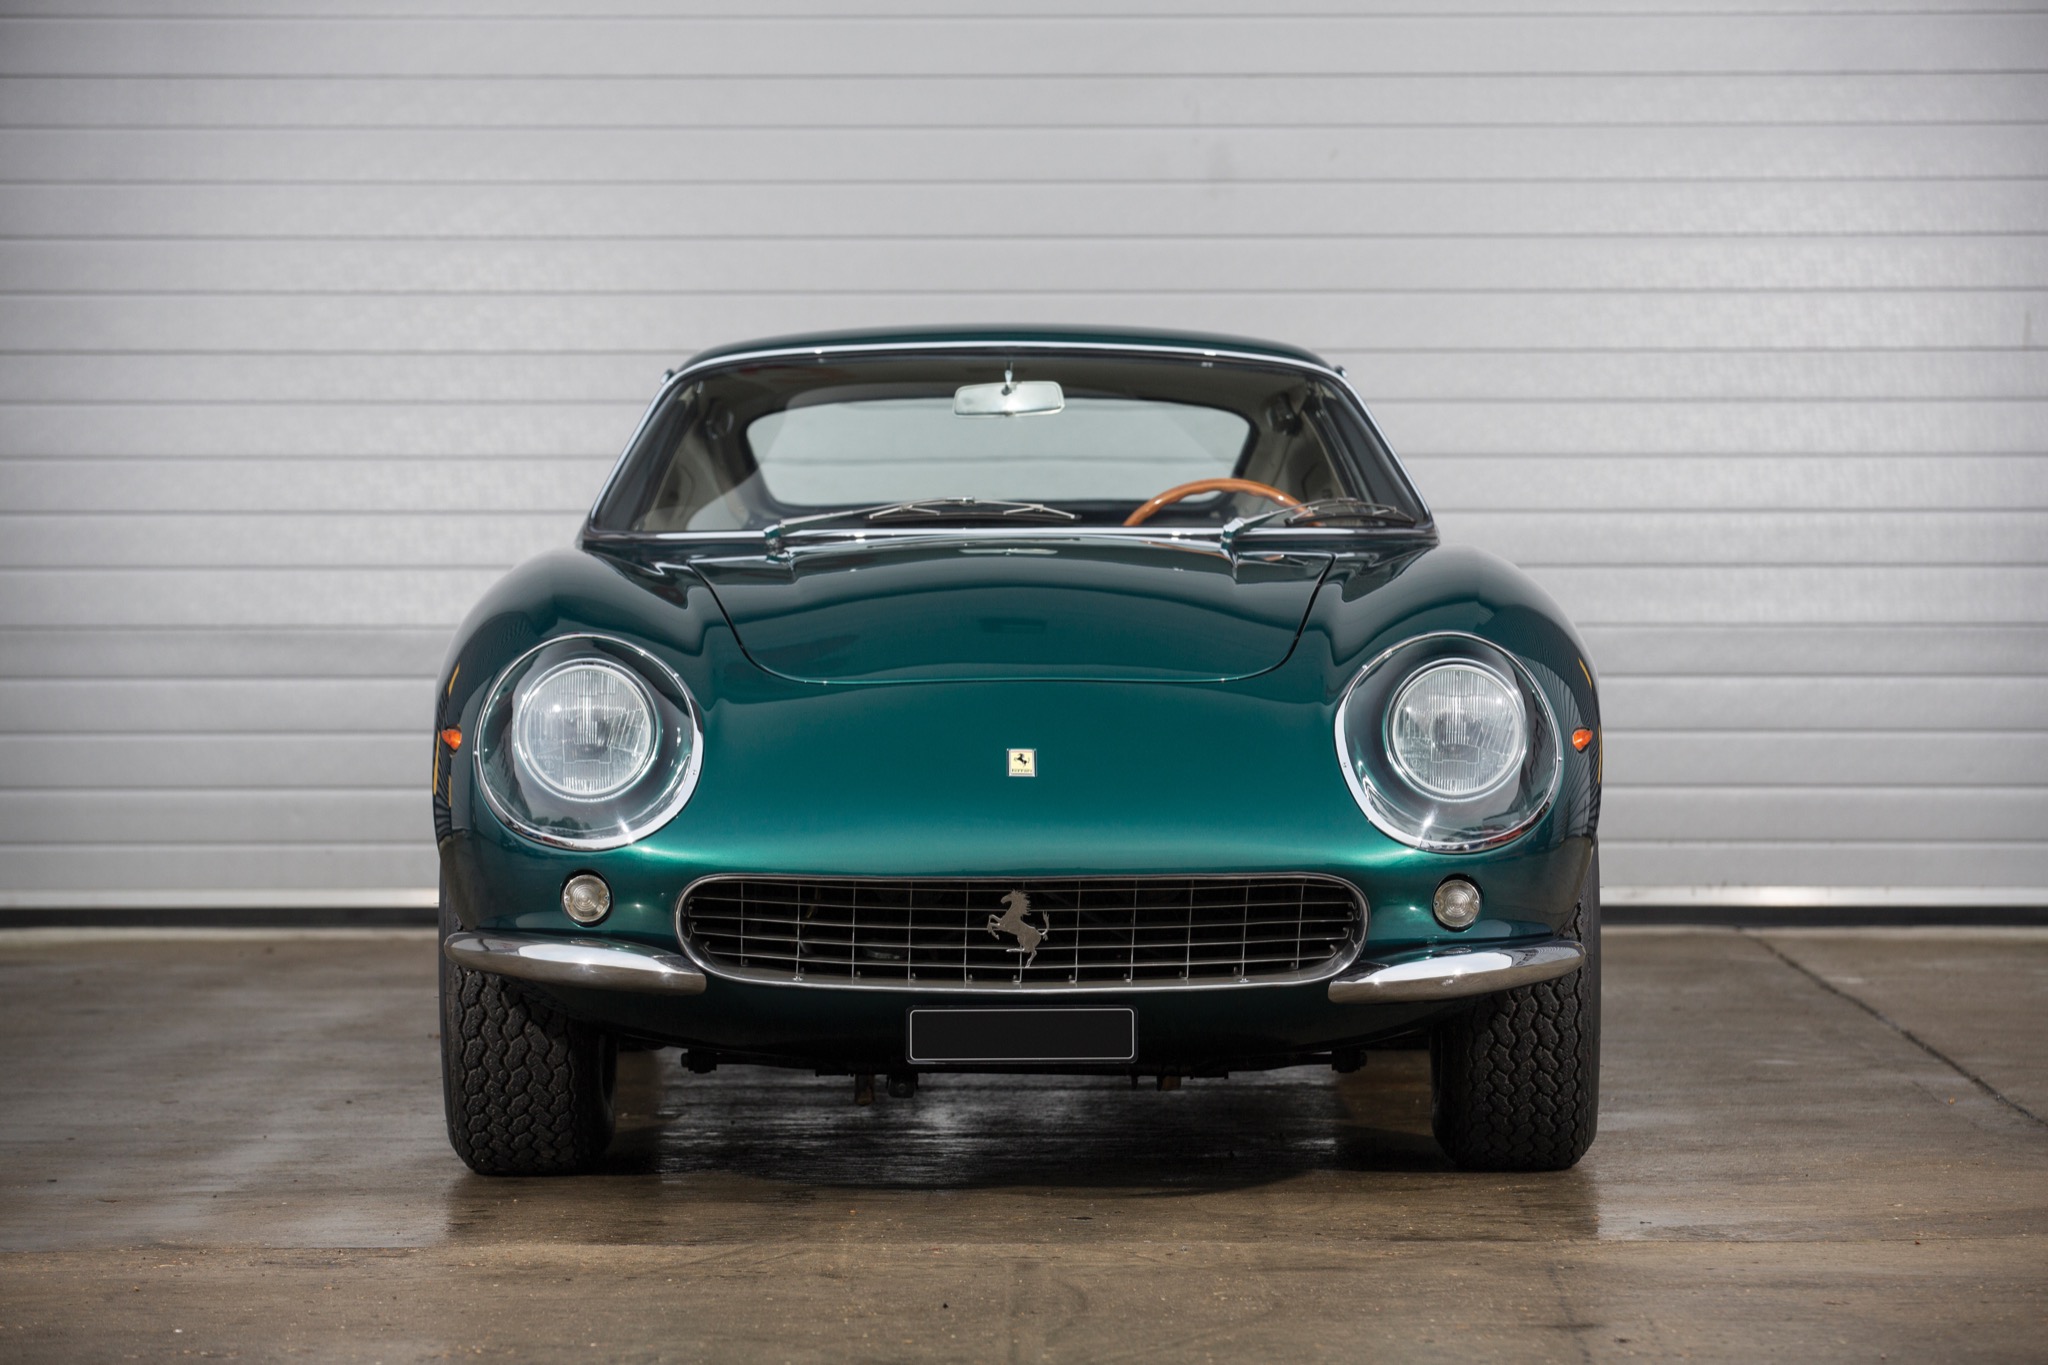 70 Jahre Ferrari, Teil 6: 275 GTB